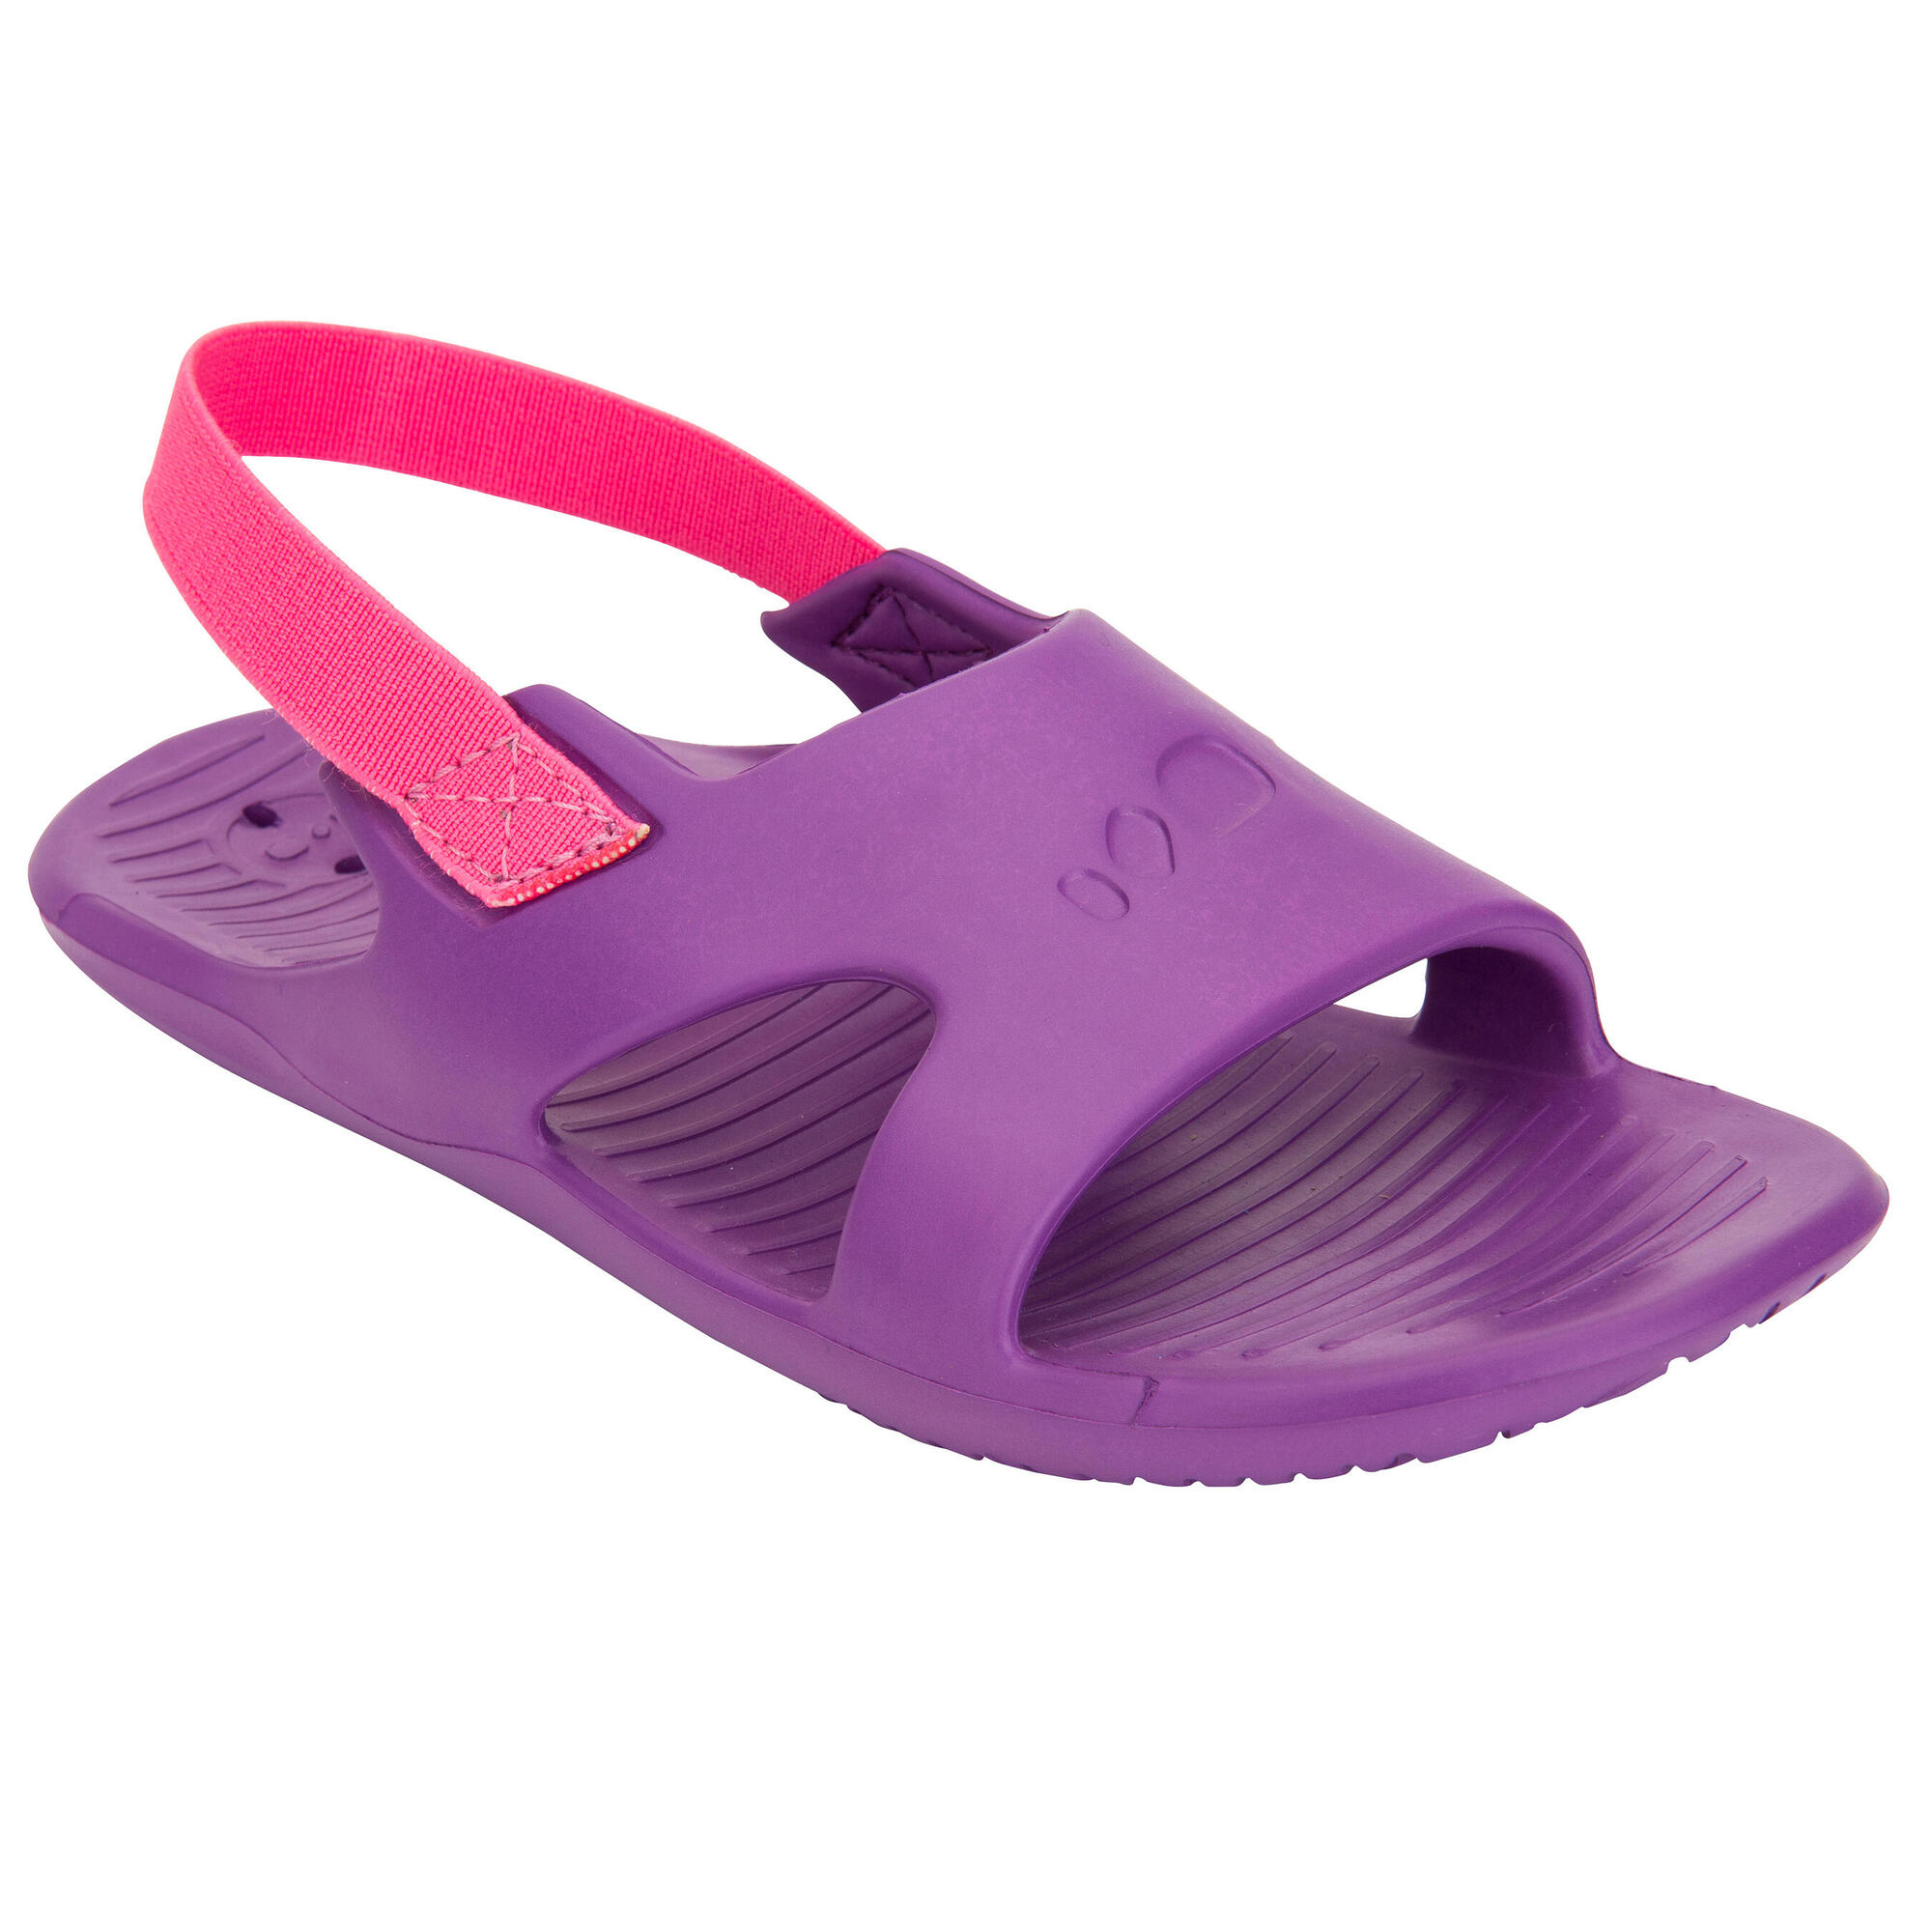 purple floral sandals